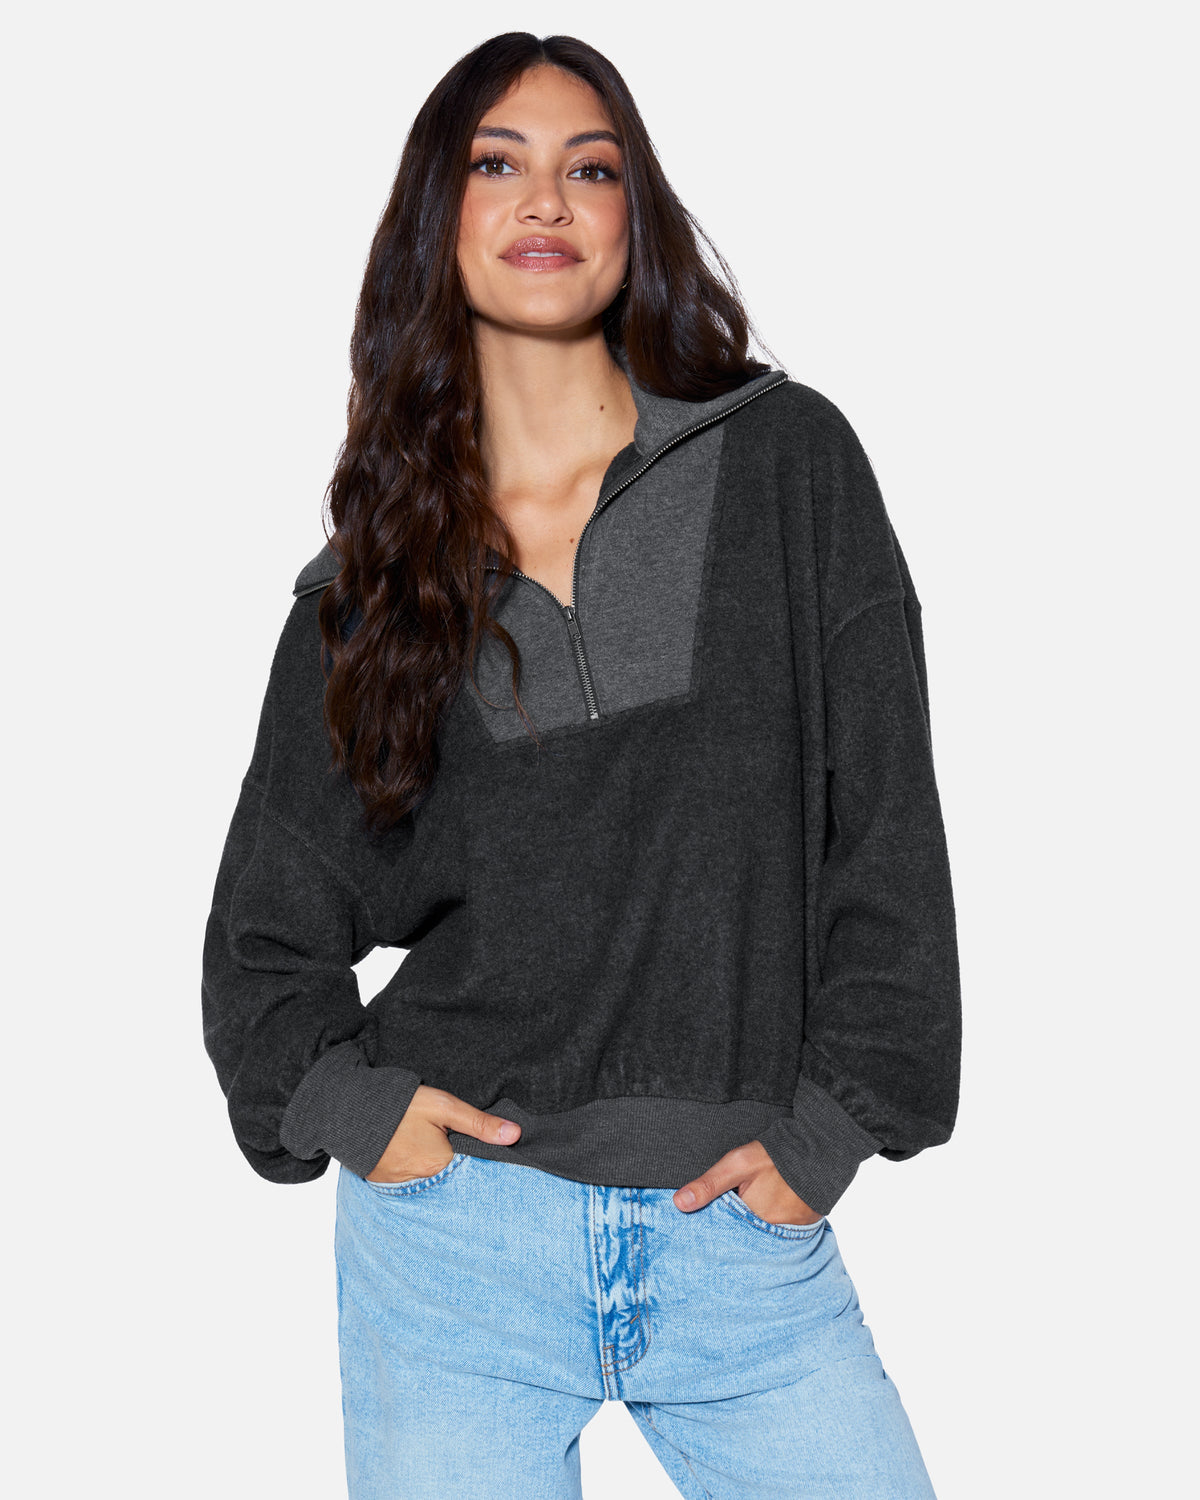 Women's Hoodies, Women's Sweatshirts